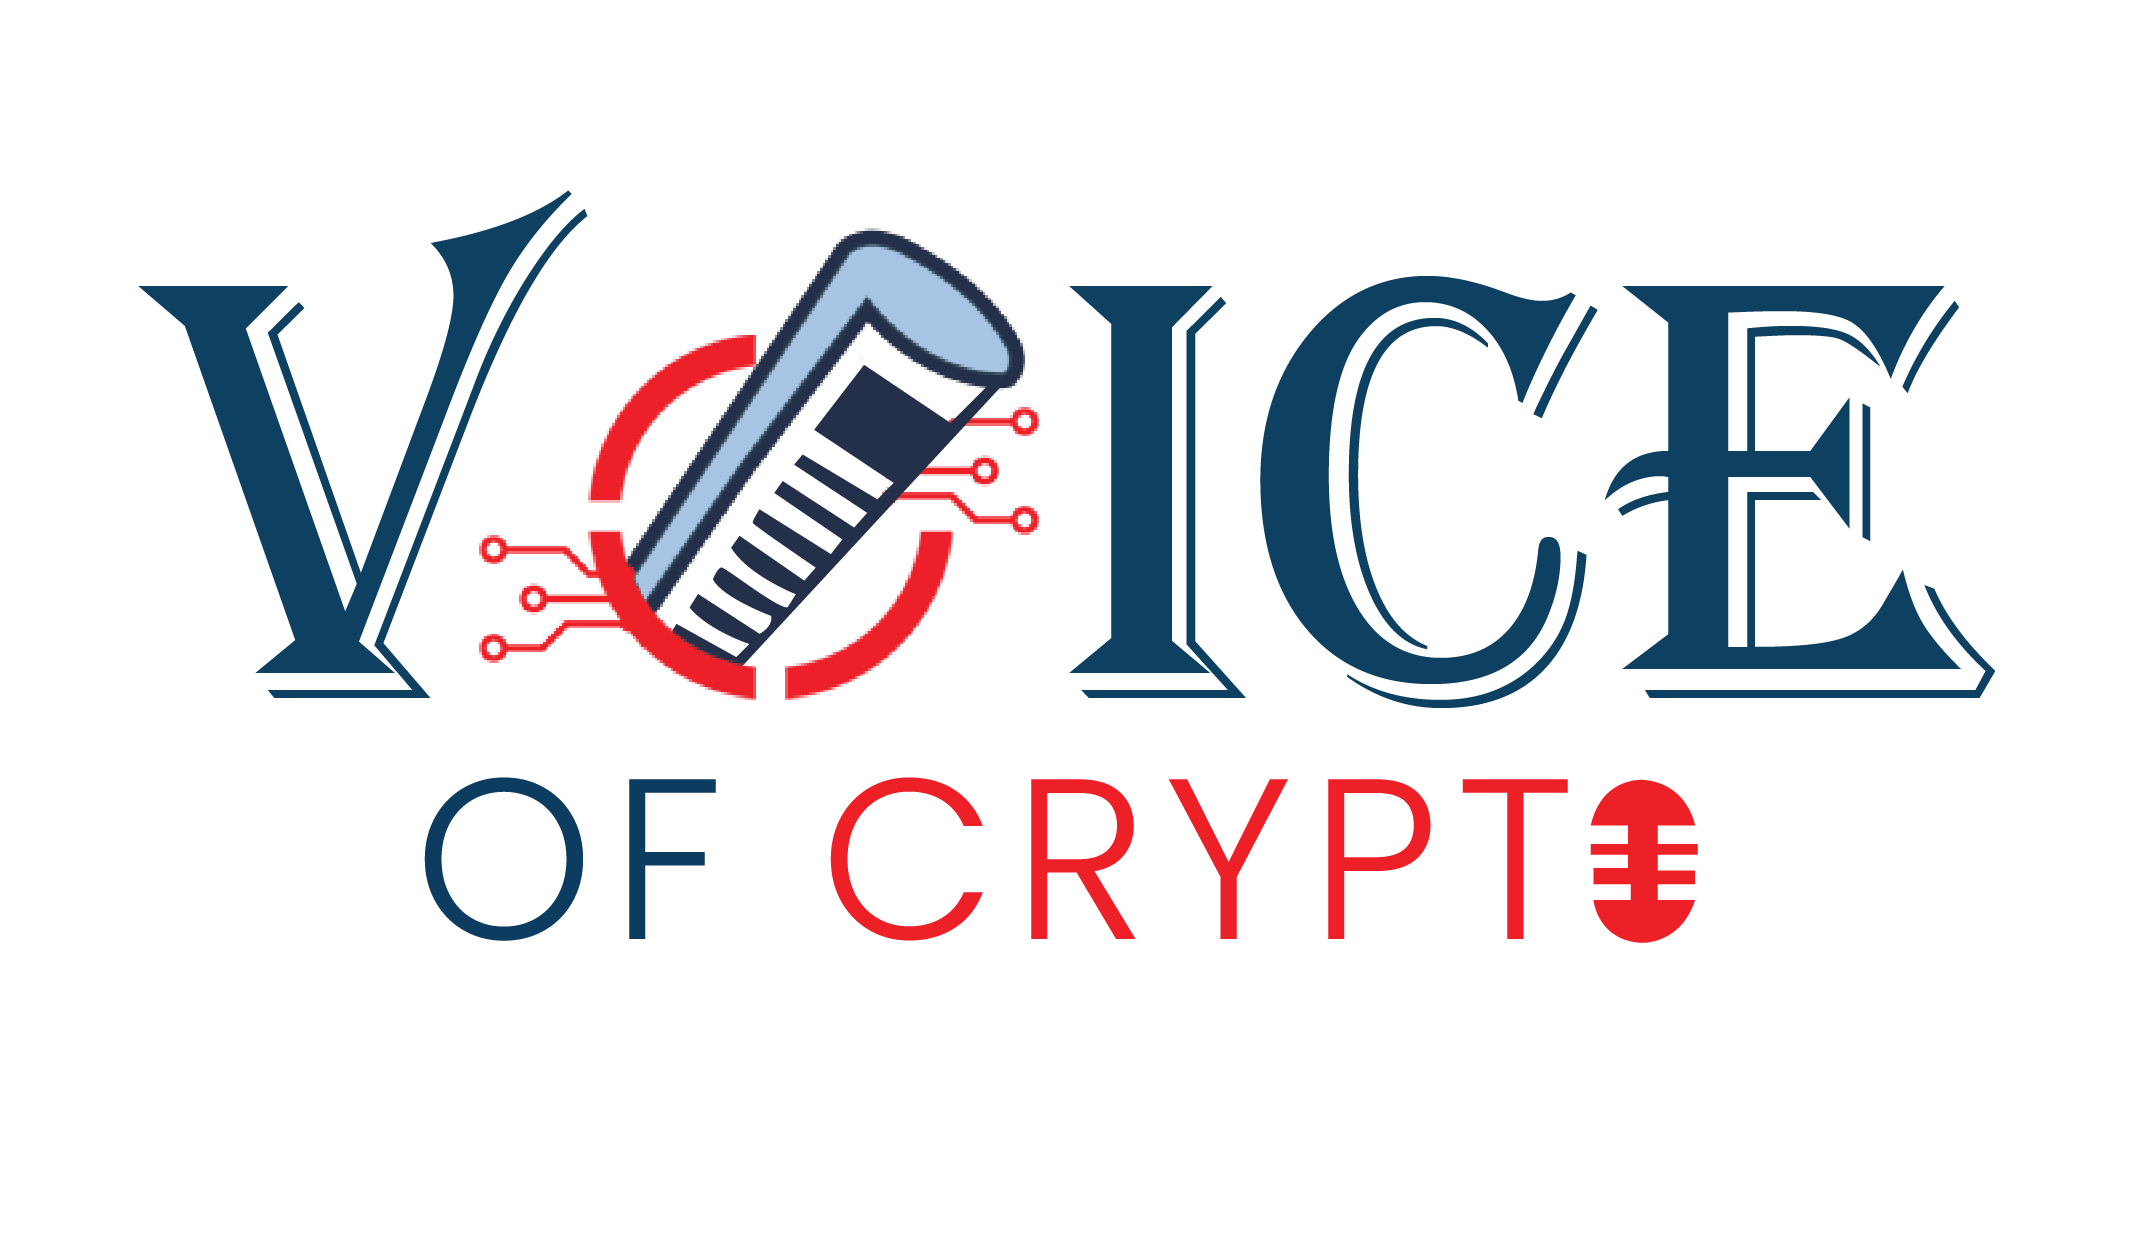 Voice of crypto